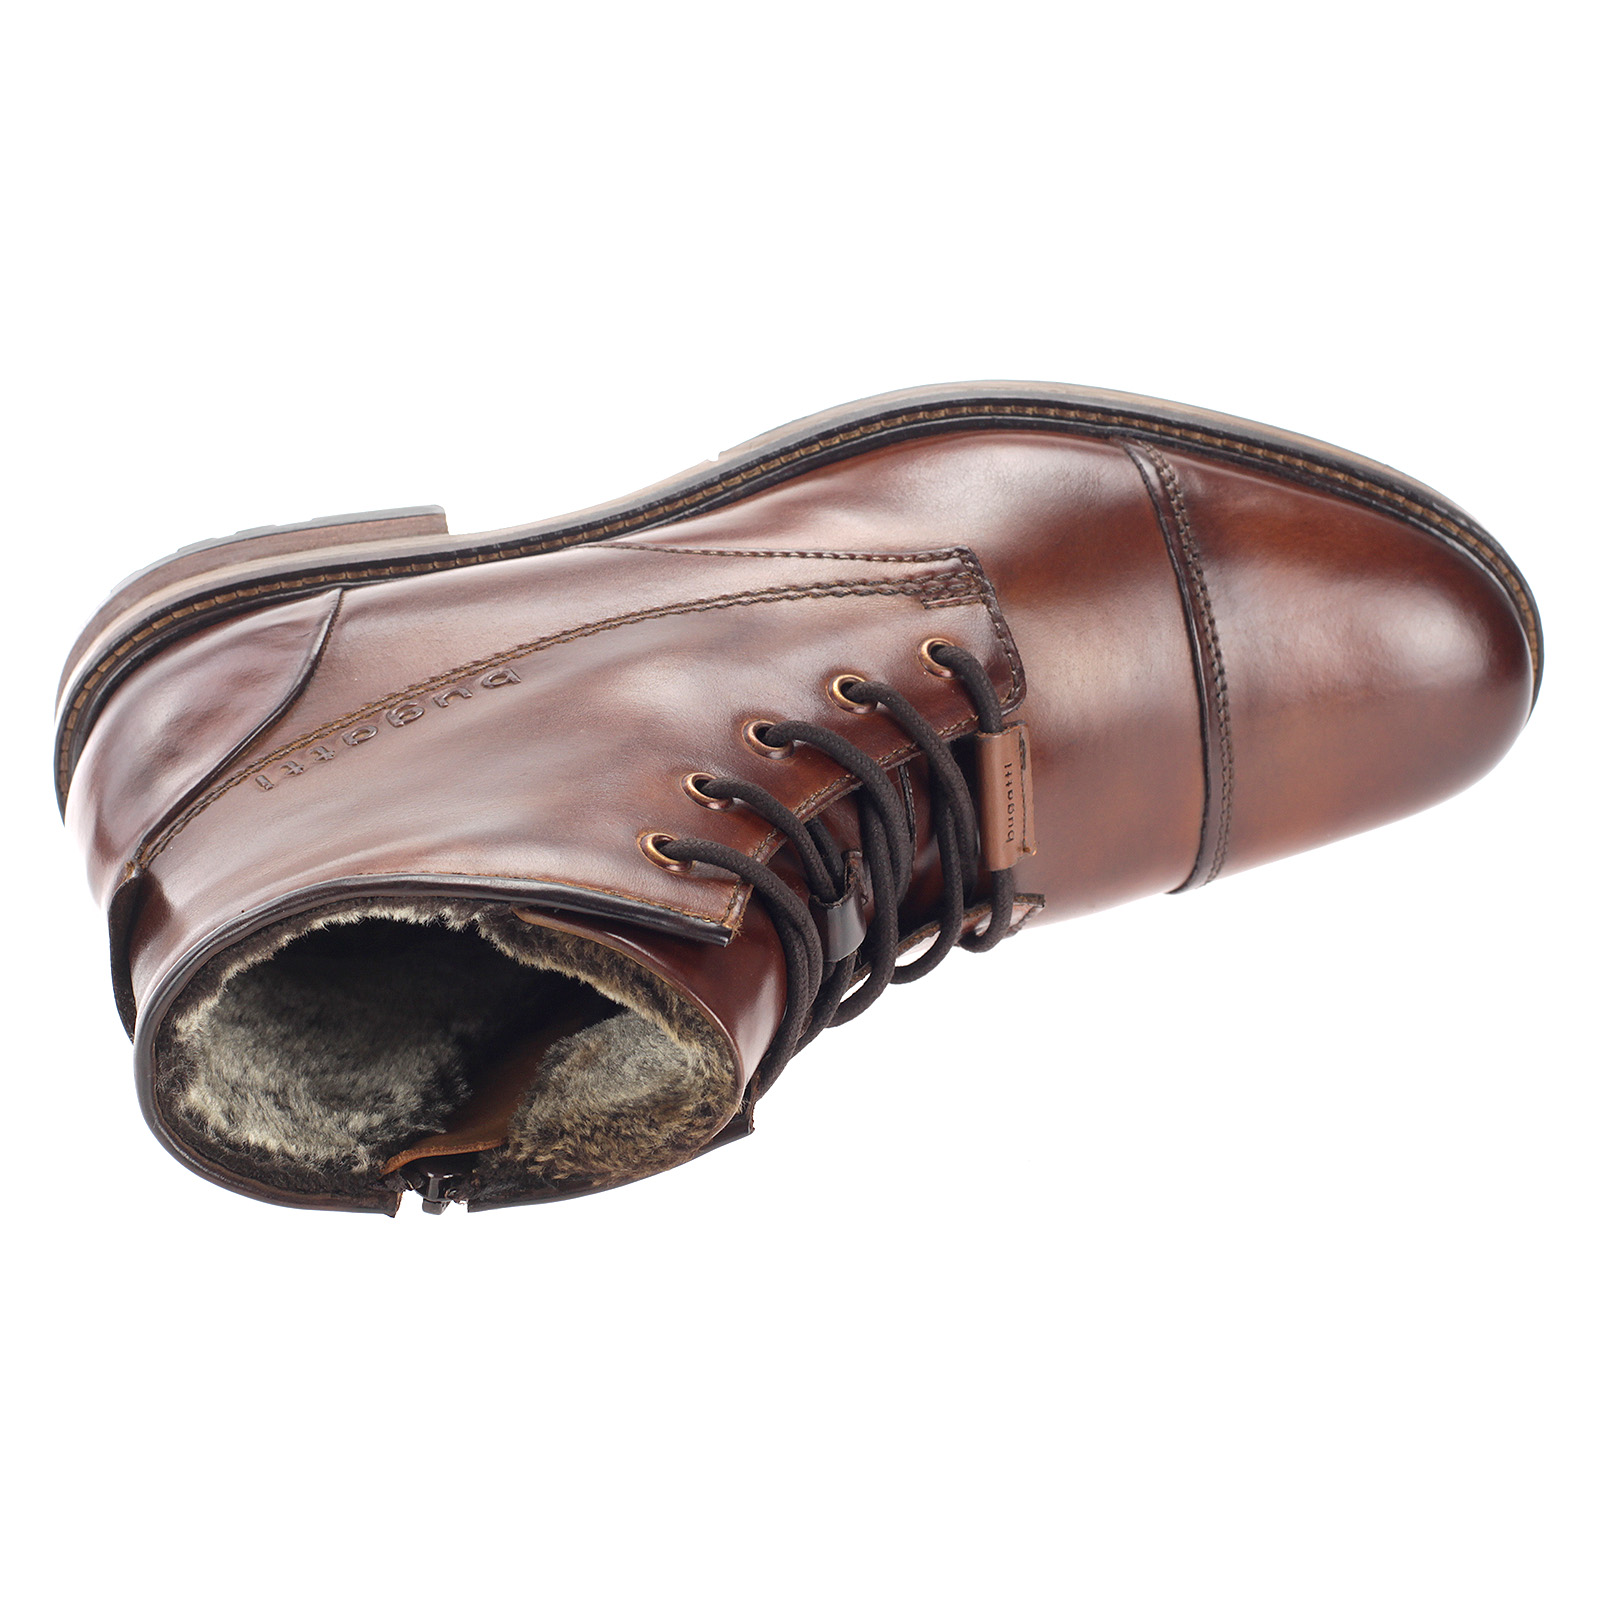 Bugatti Herren Stiefel Leder Boots Gefüttert Business Schuhe Elegant Braun 331-78252-1000-6300